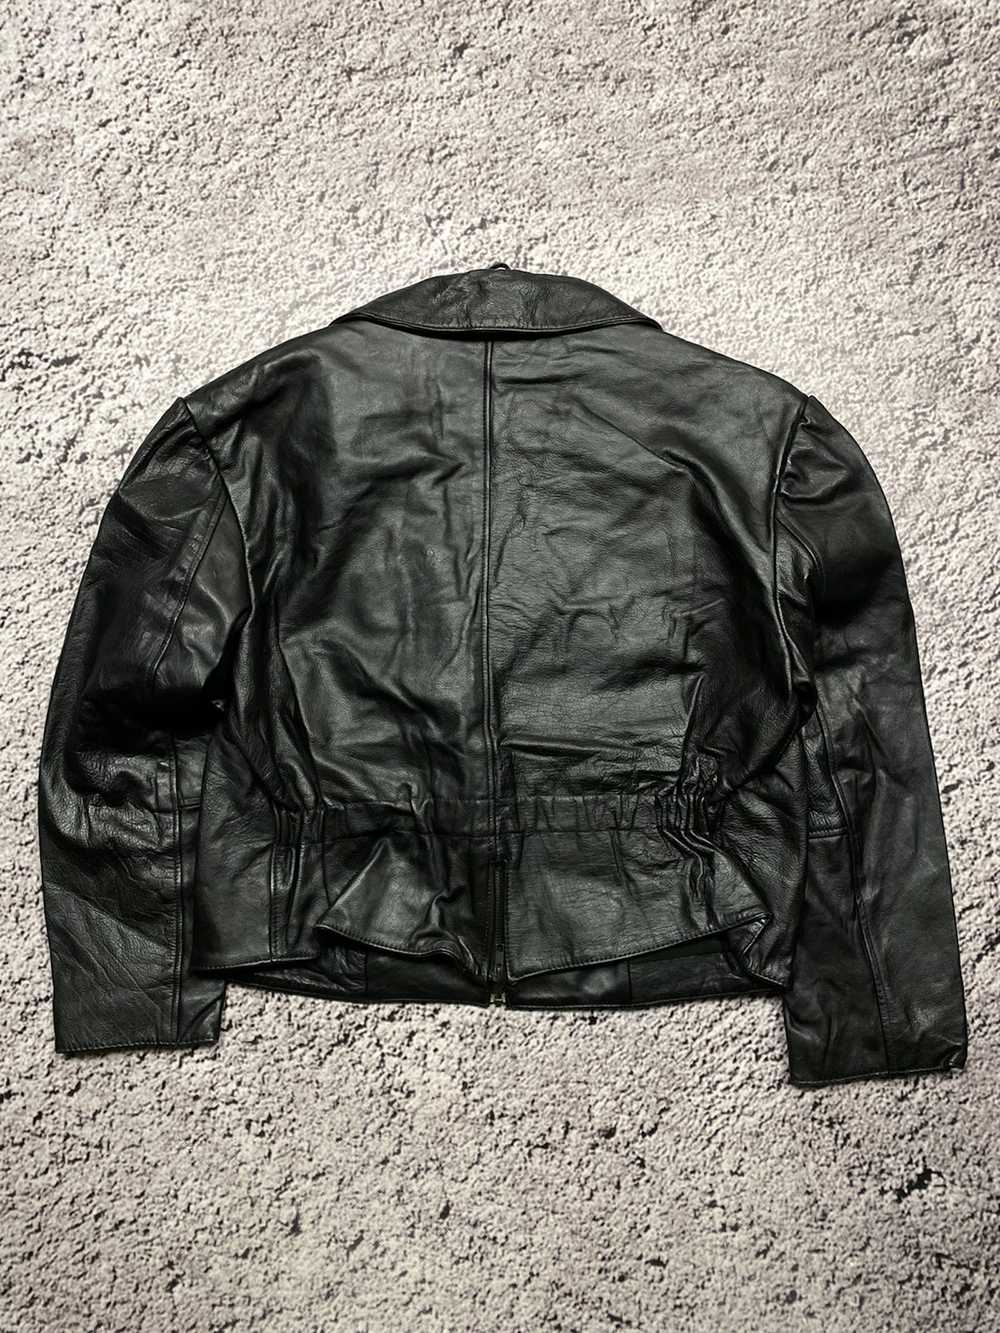 Avant Garde × Designer × Leather Jacket Vintage a… - image 3